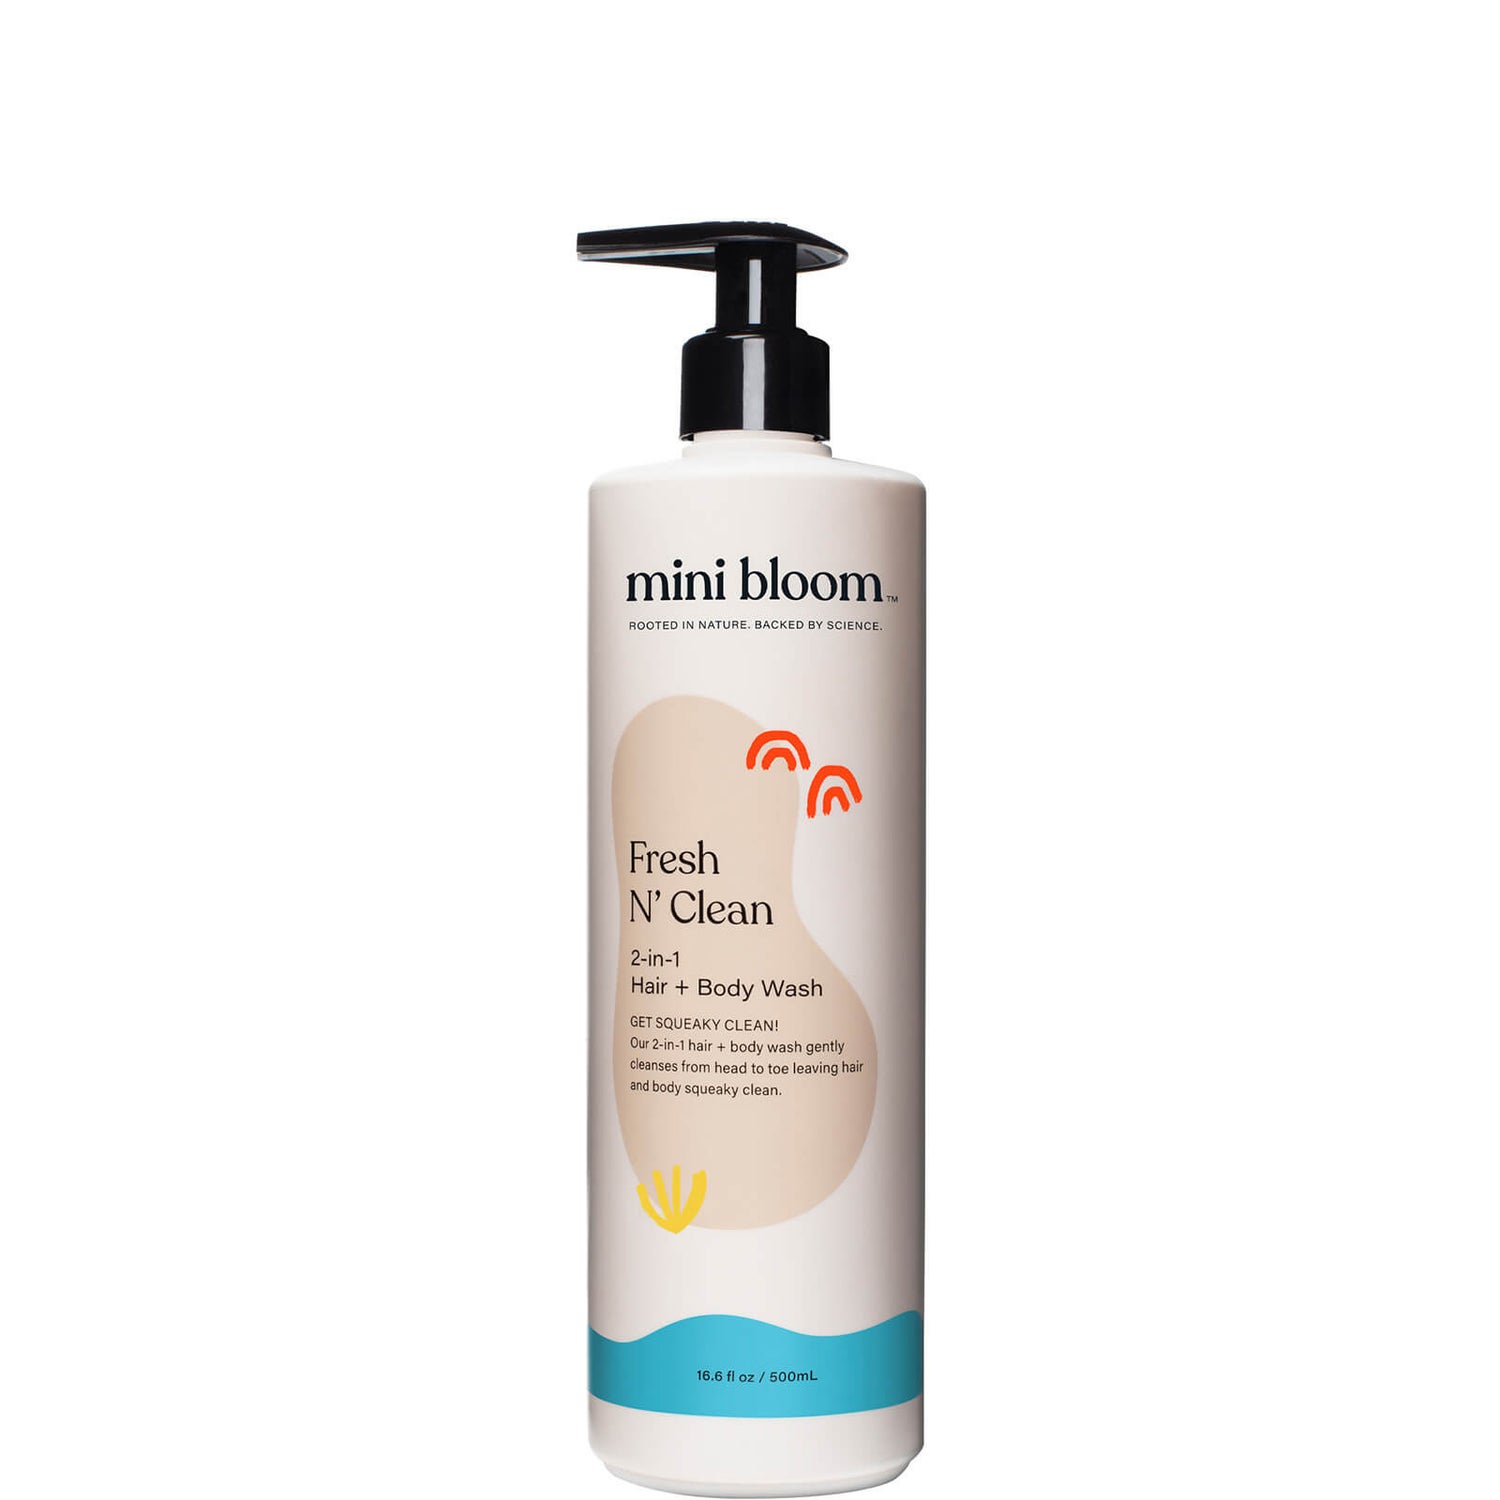 Mini Bloom Fresh N' Clean 2-in-1 Hair and Body Wash